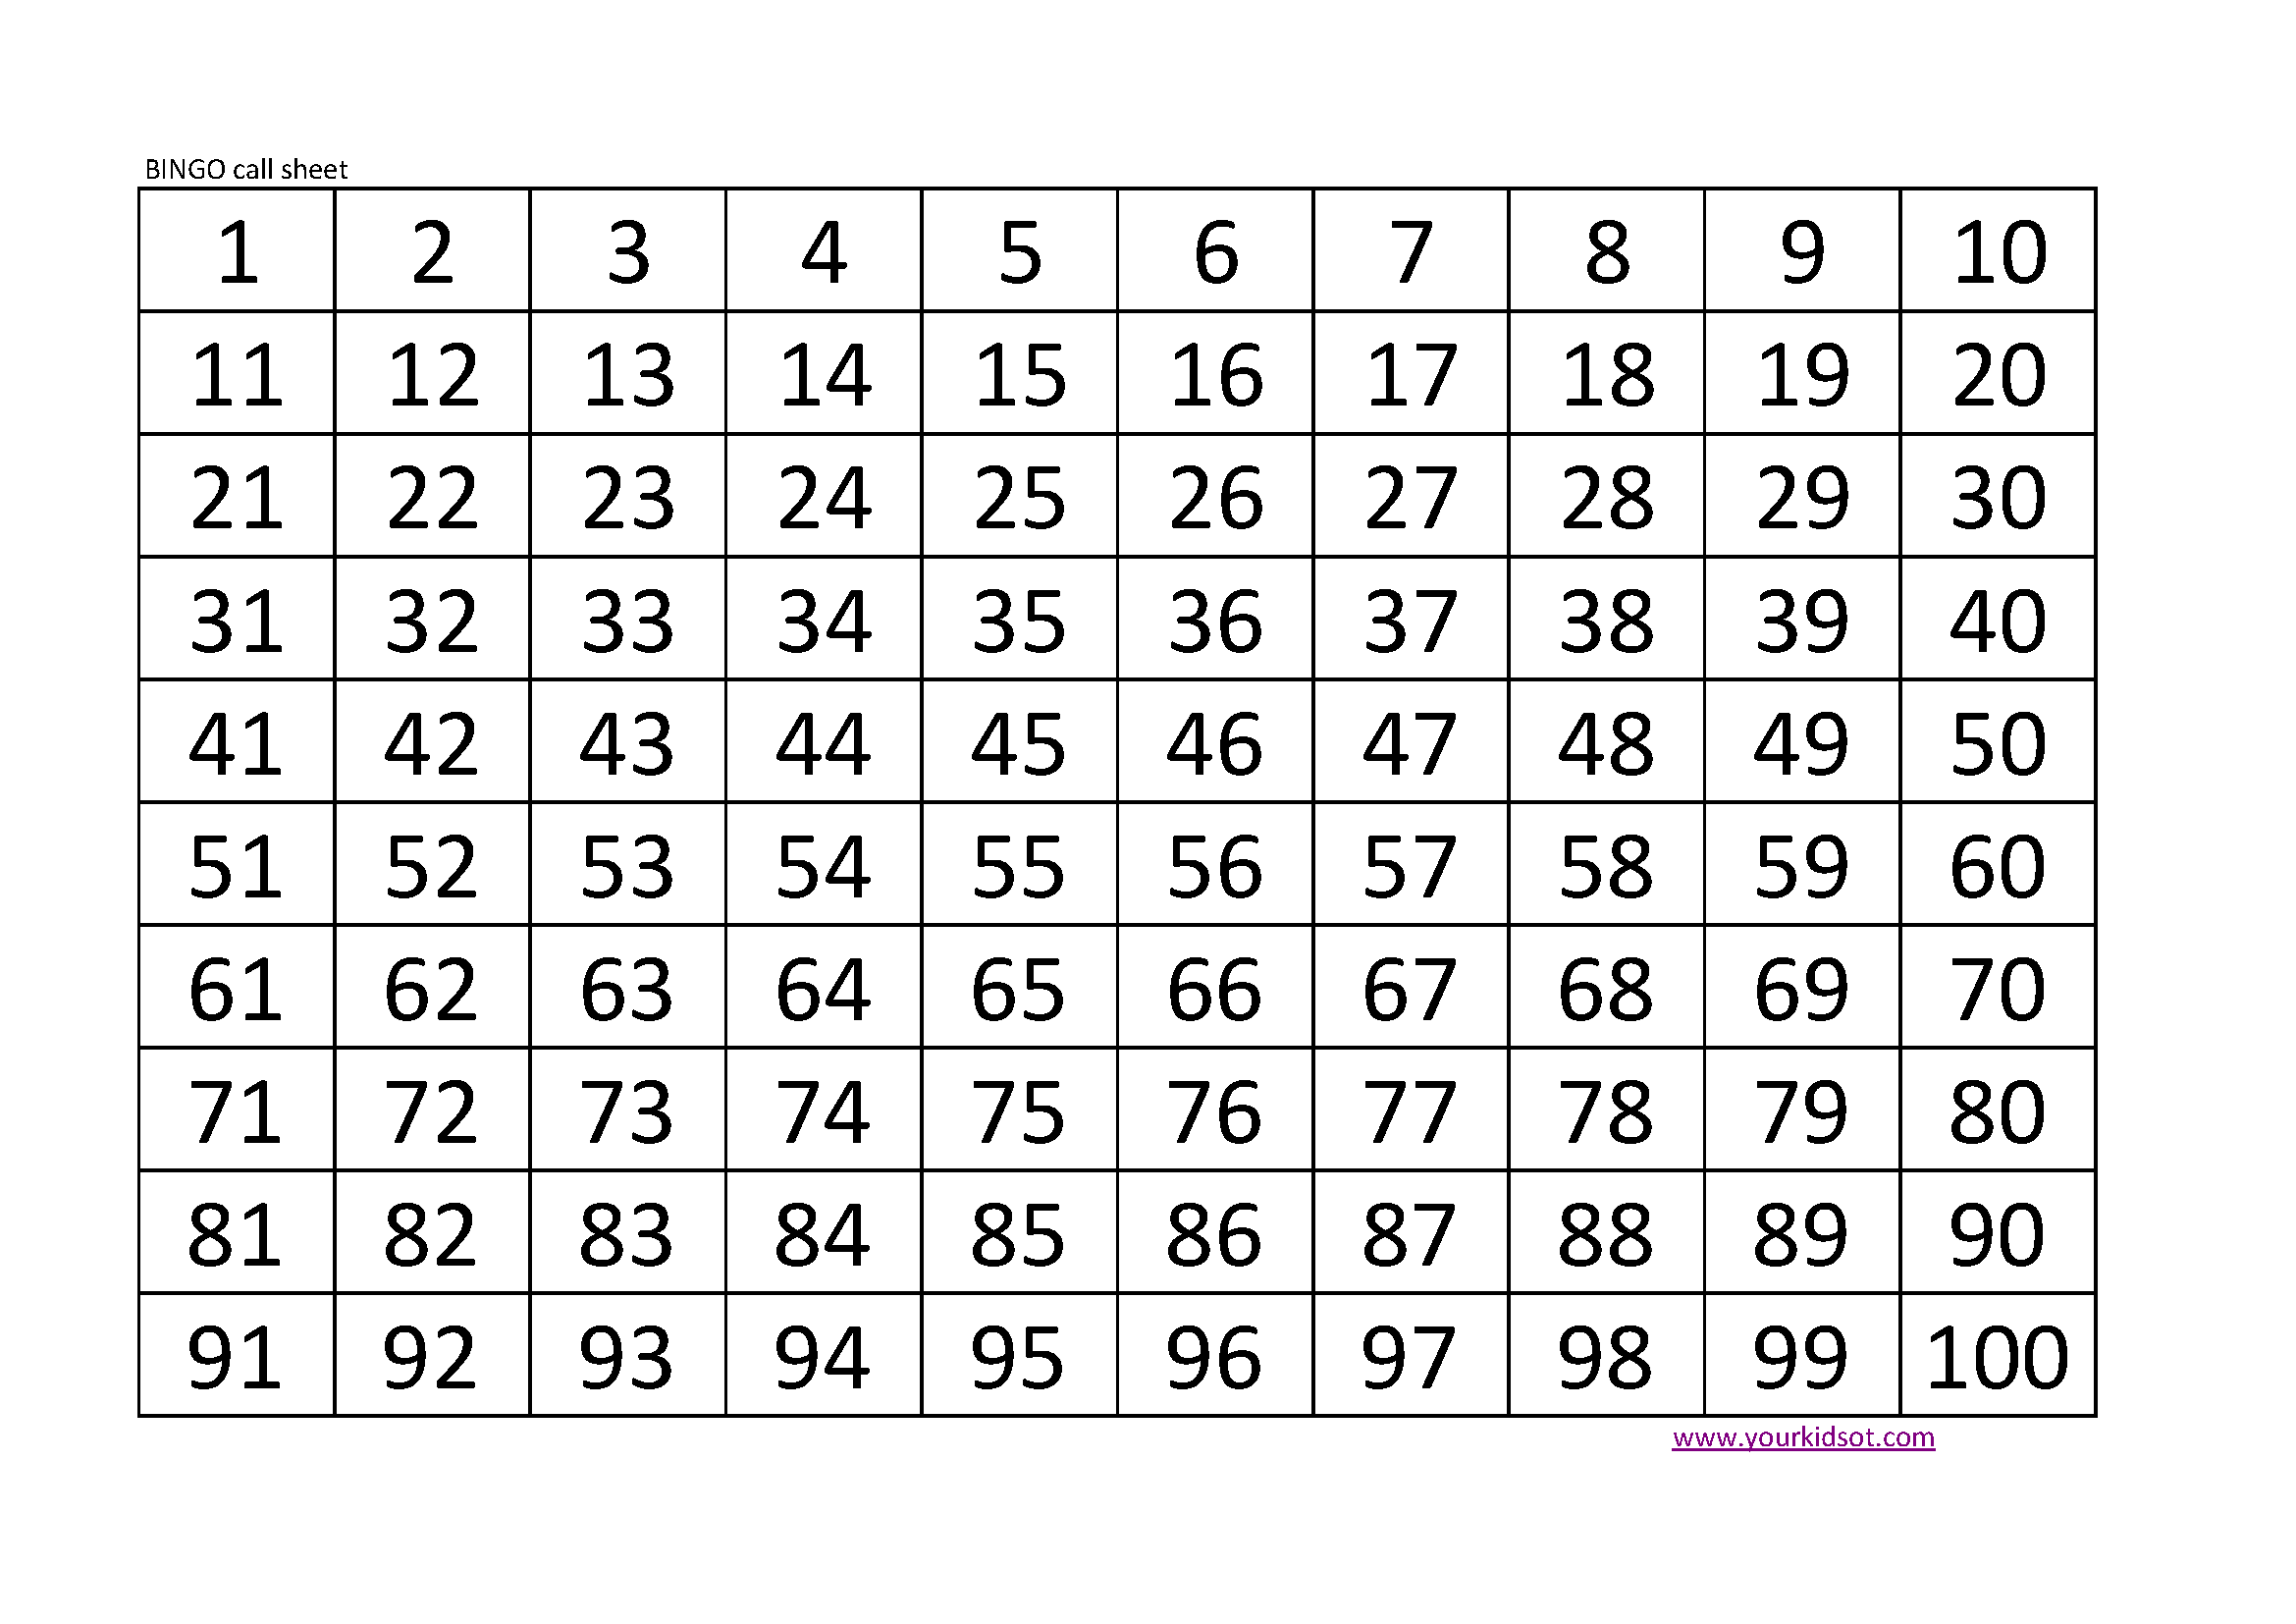 Printable Bingo Calling Cards 1-90 - FreePrintableTM.com 